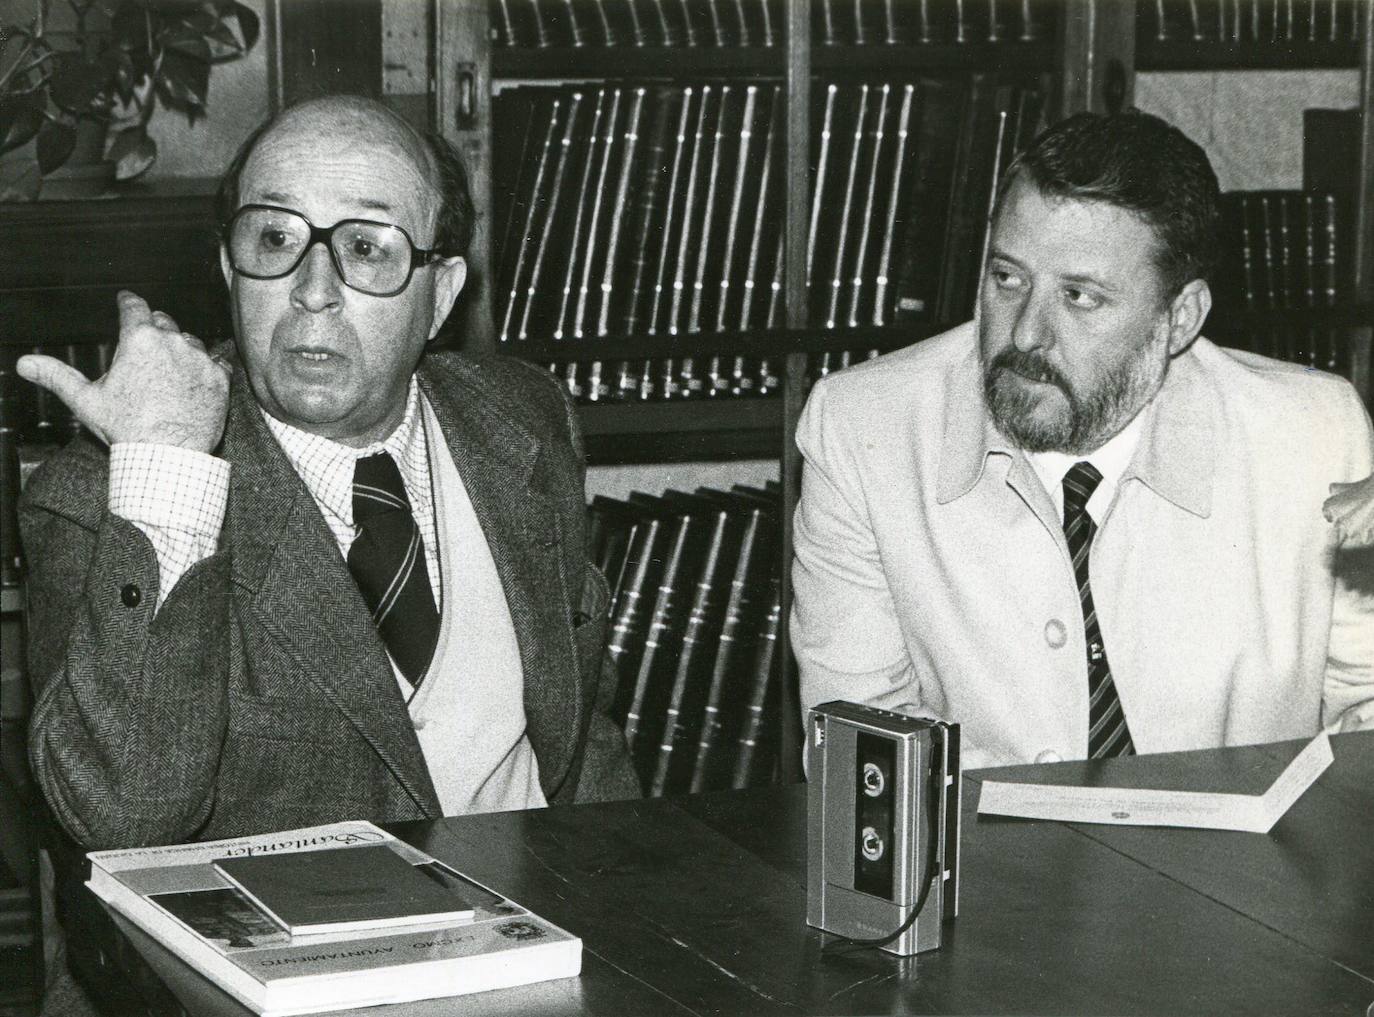 Imagen de 1988 del escritor Jesús Pardo y el entonces concejal de Santander Ángel Díaz Ocejo.